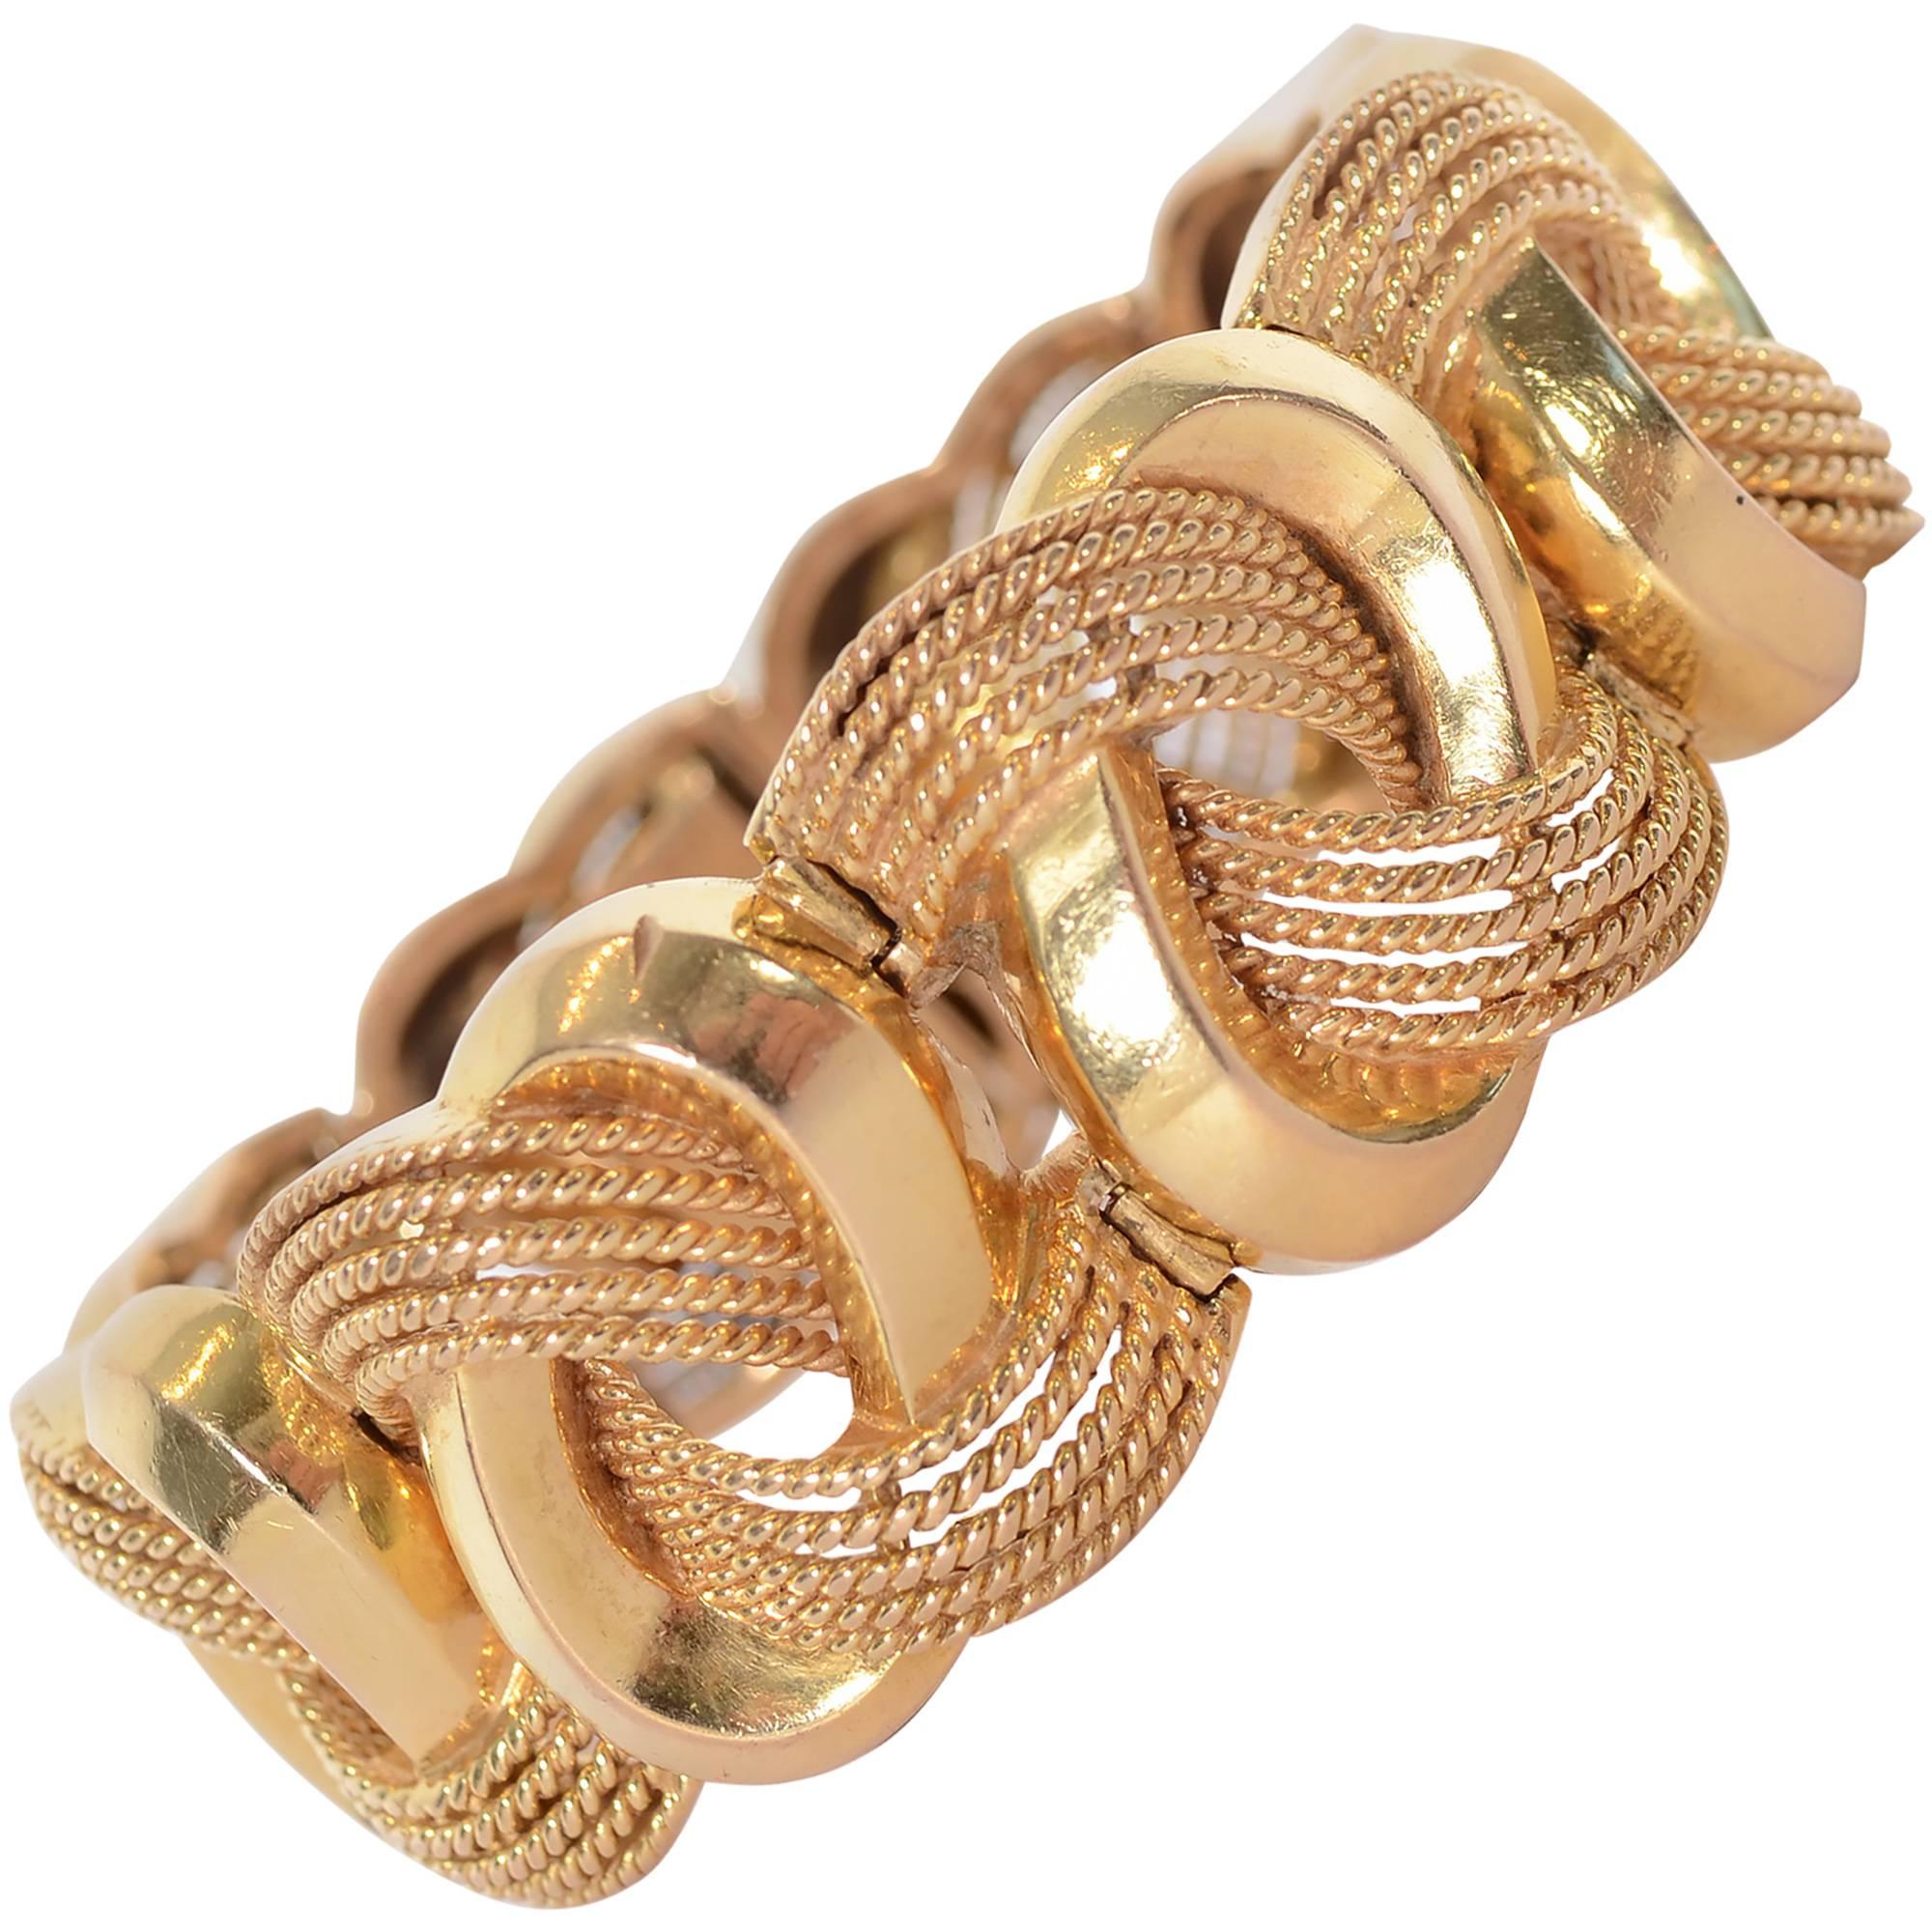 Oval Gold Links Bracelet